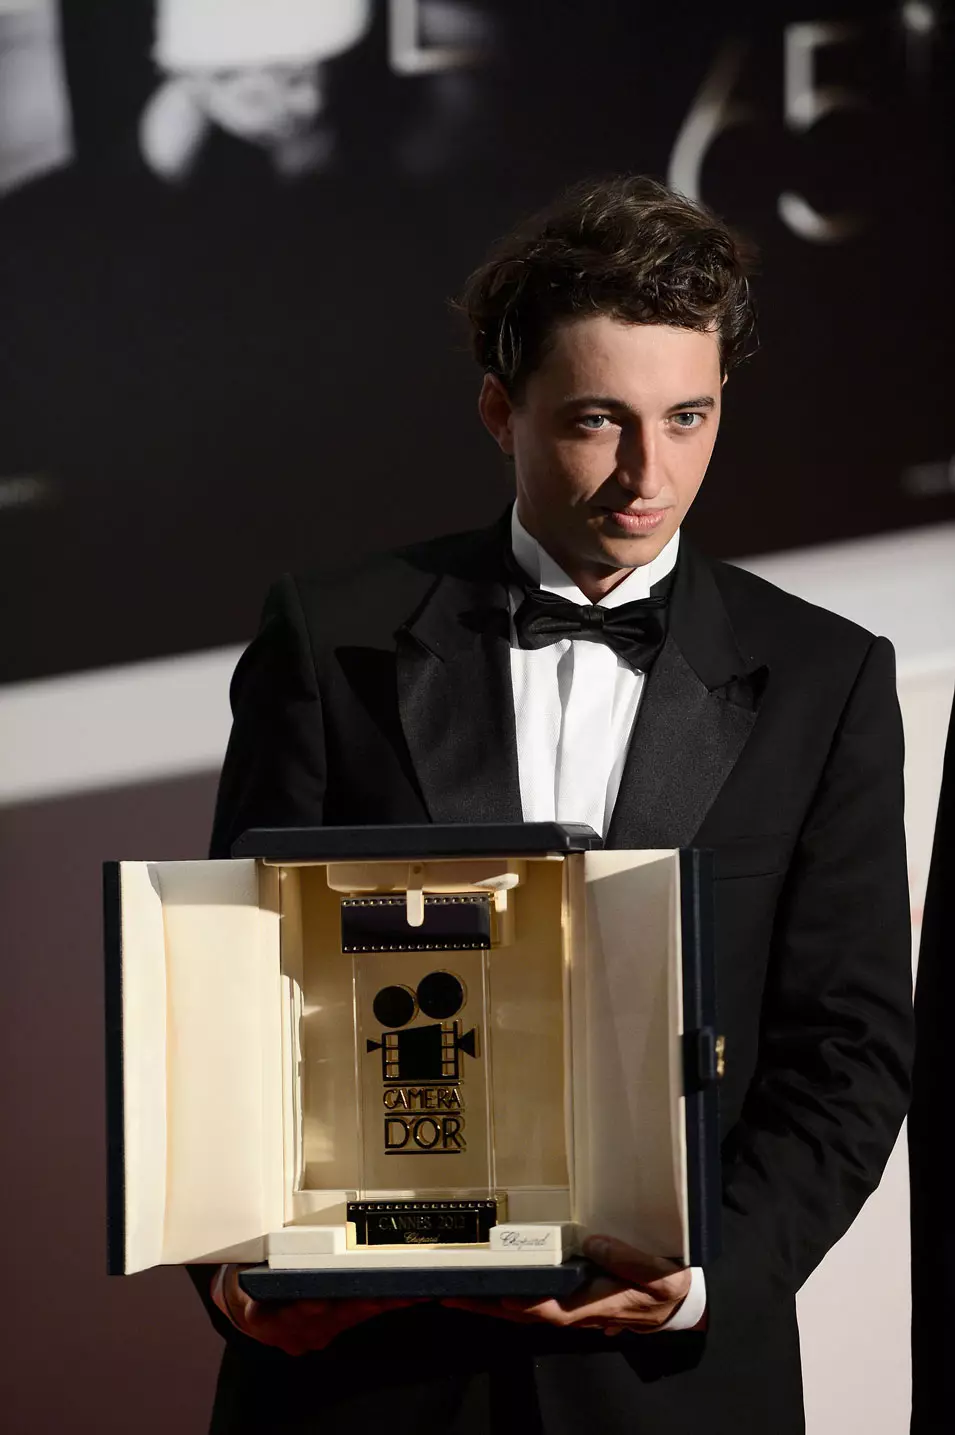 הכוכב של פסטיבל קאן 2012. בן צייטלין מקבל את פרס מצלמת הזהב לסרט ביכורים בפסטיבל